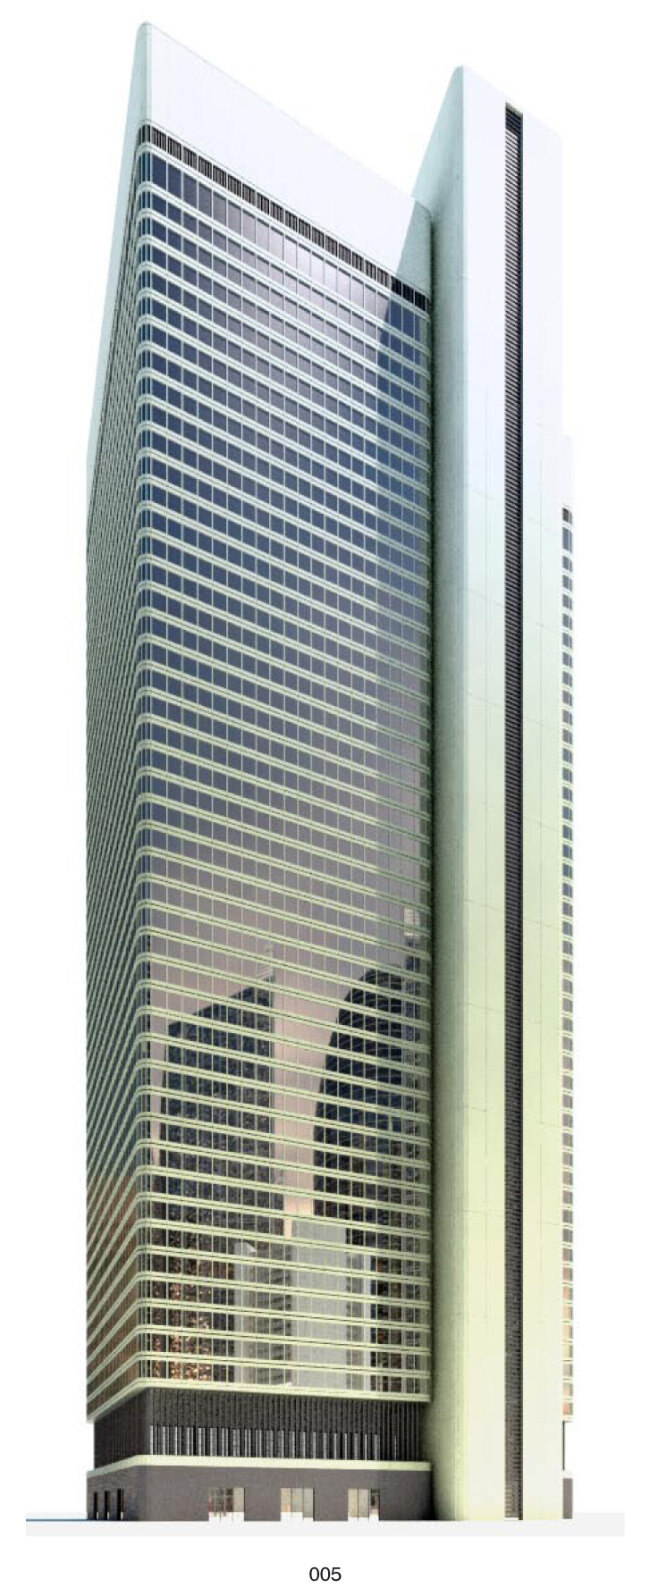 高楼 模型 高层 建筑 3d模型素材 建筑模型